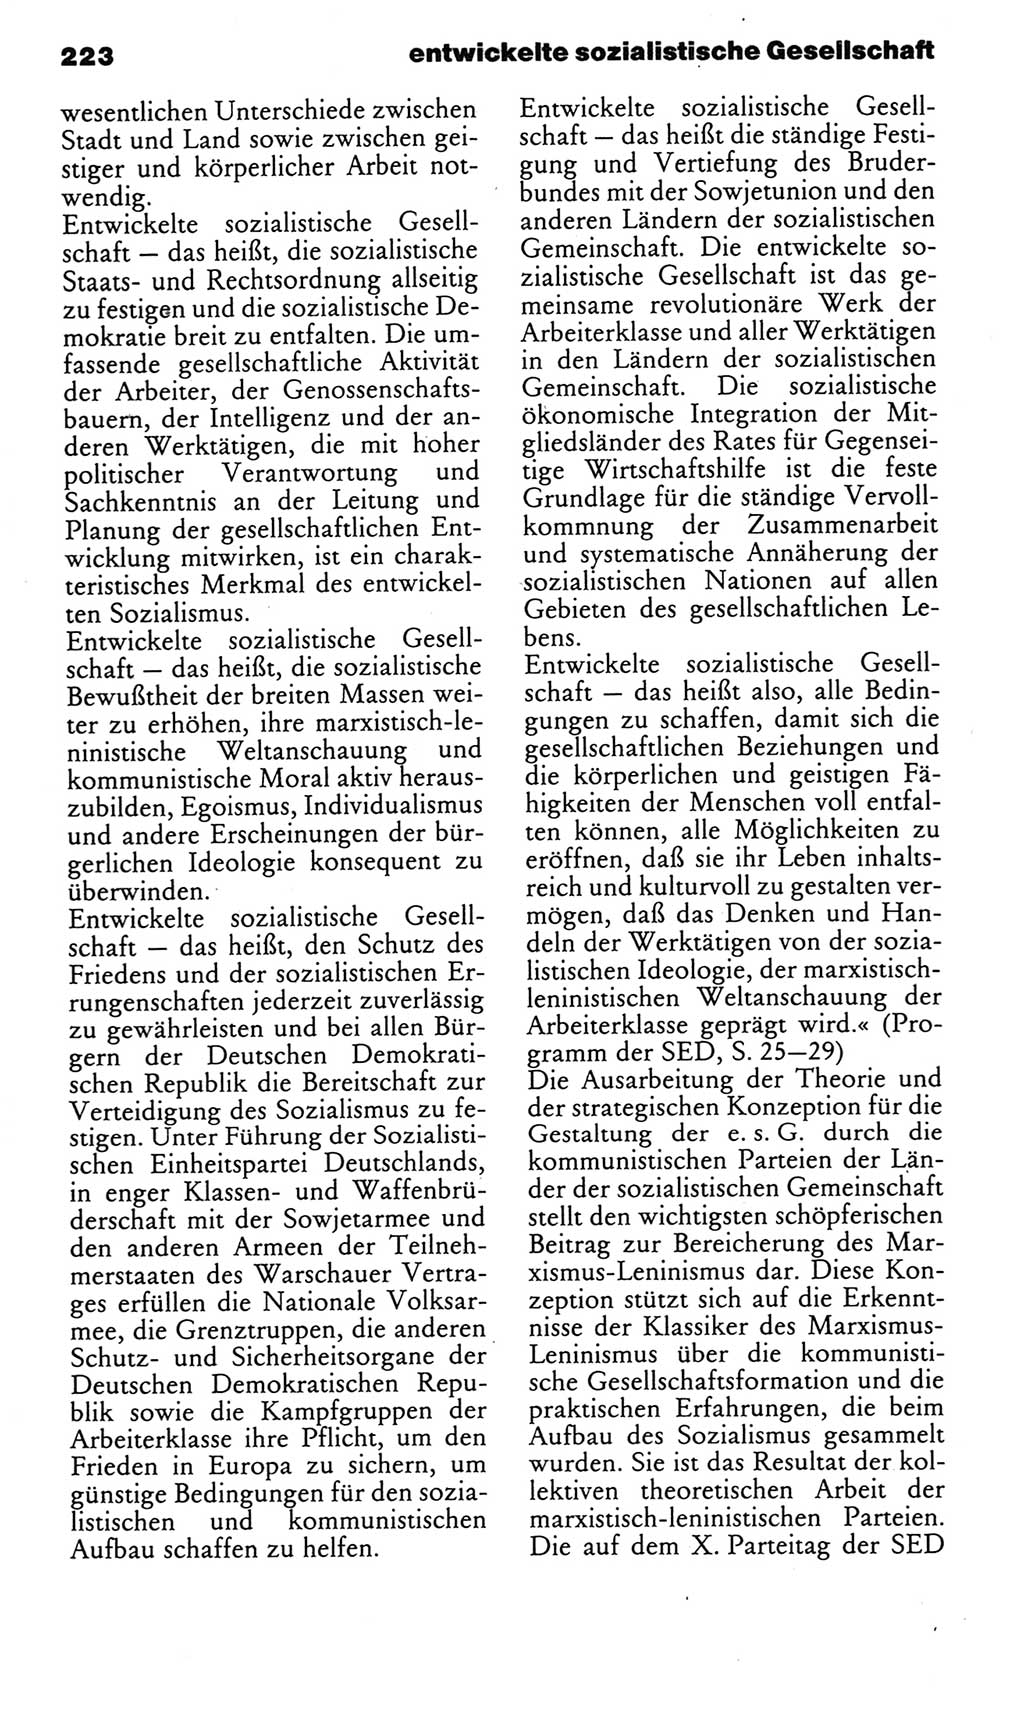 Kleines politisches Wörterbuch [Deutsche Demokratische Republik (DDR)] 1985, Seite 223 (Kl. pol. Wb. DDR 1985, S. 223)